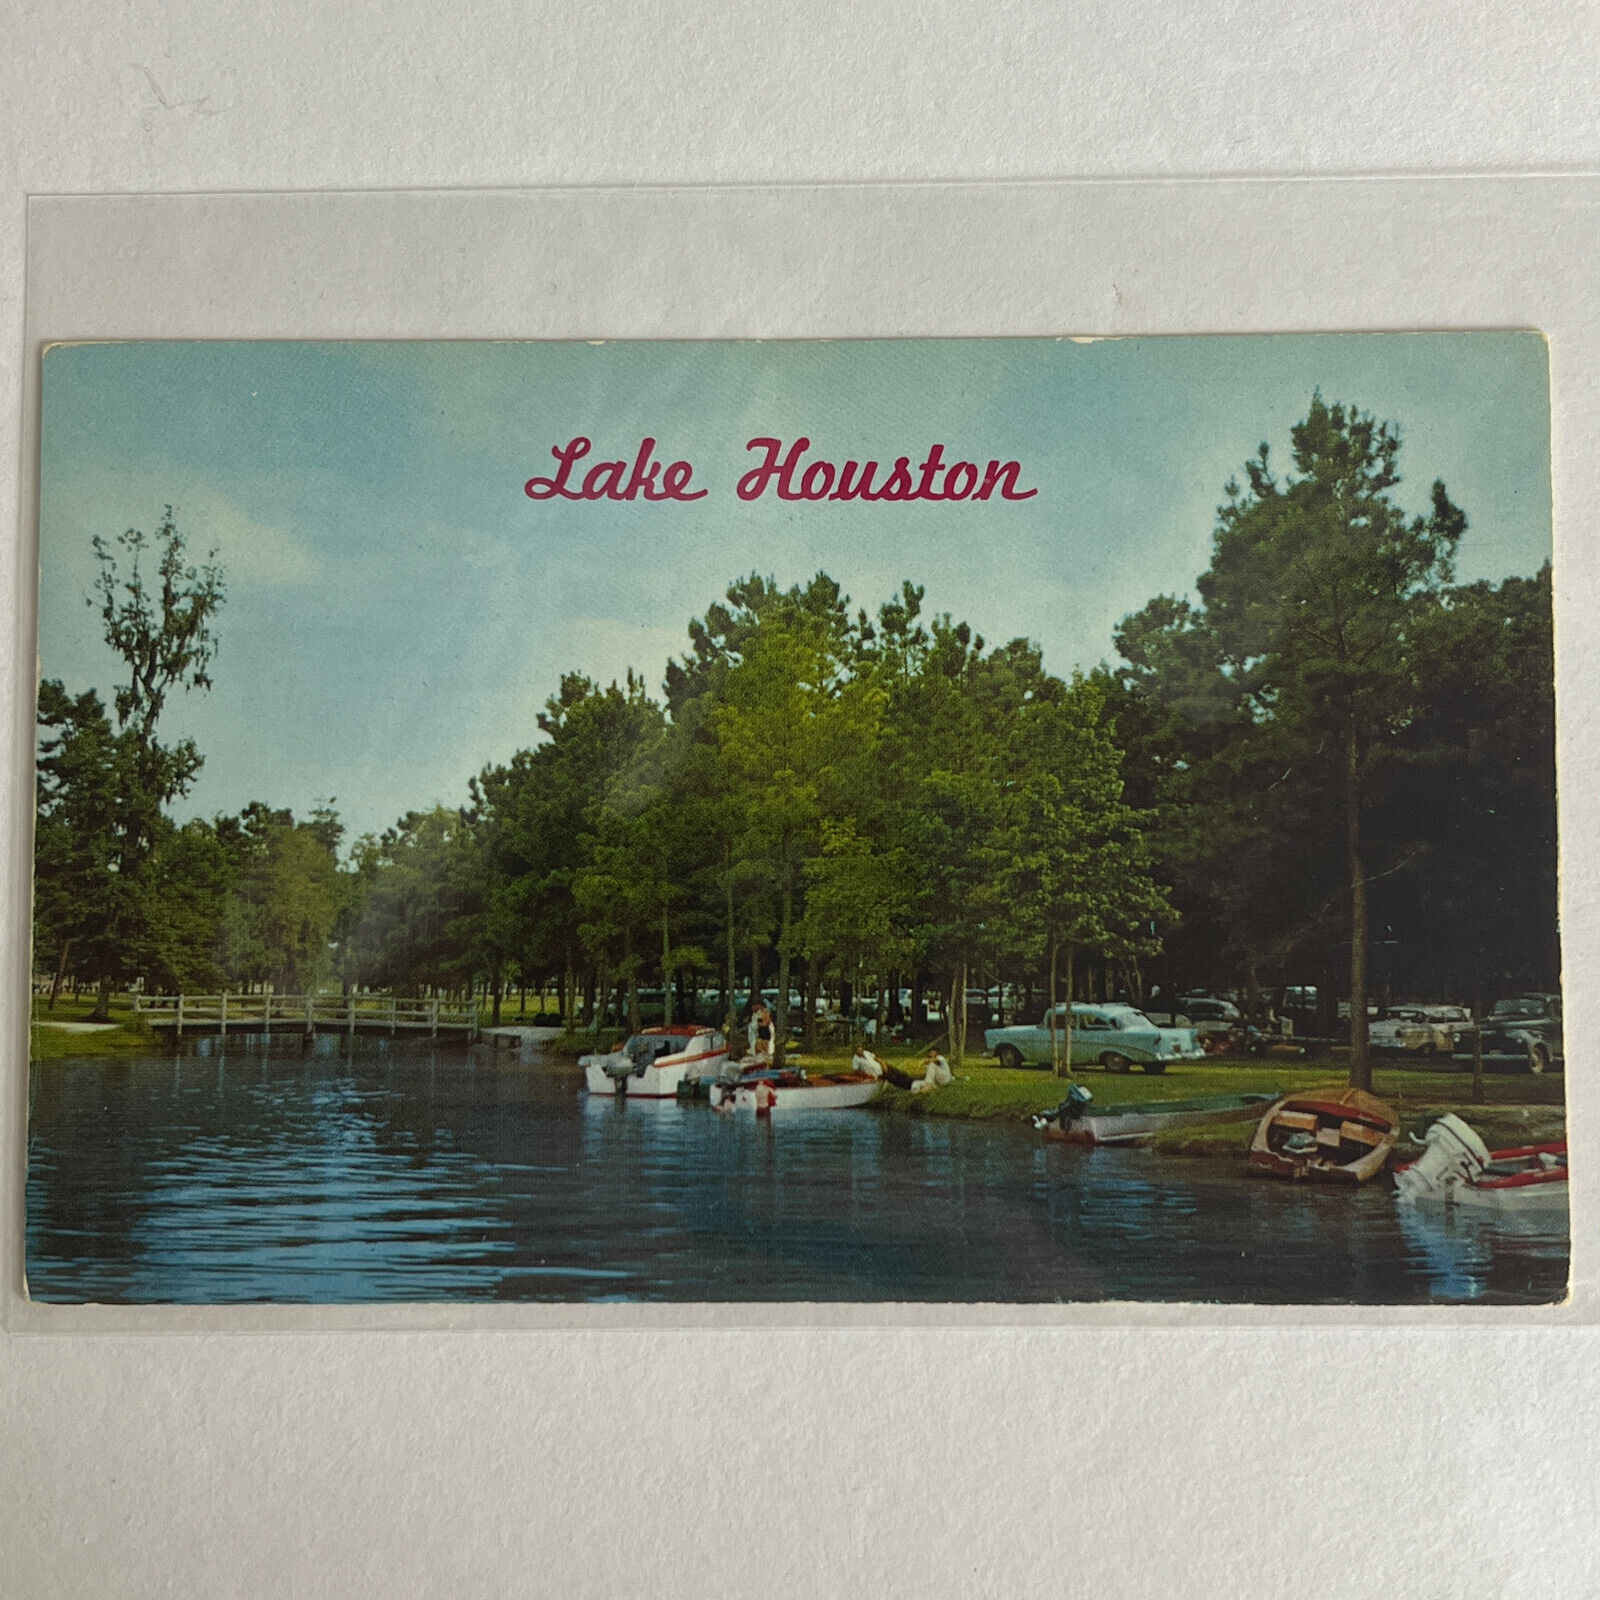 Lake Houston Texas Postcard 